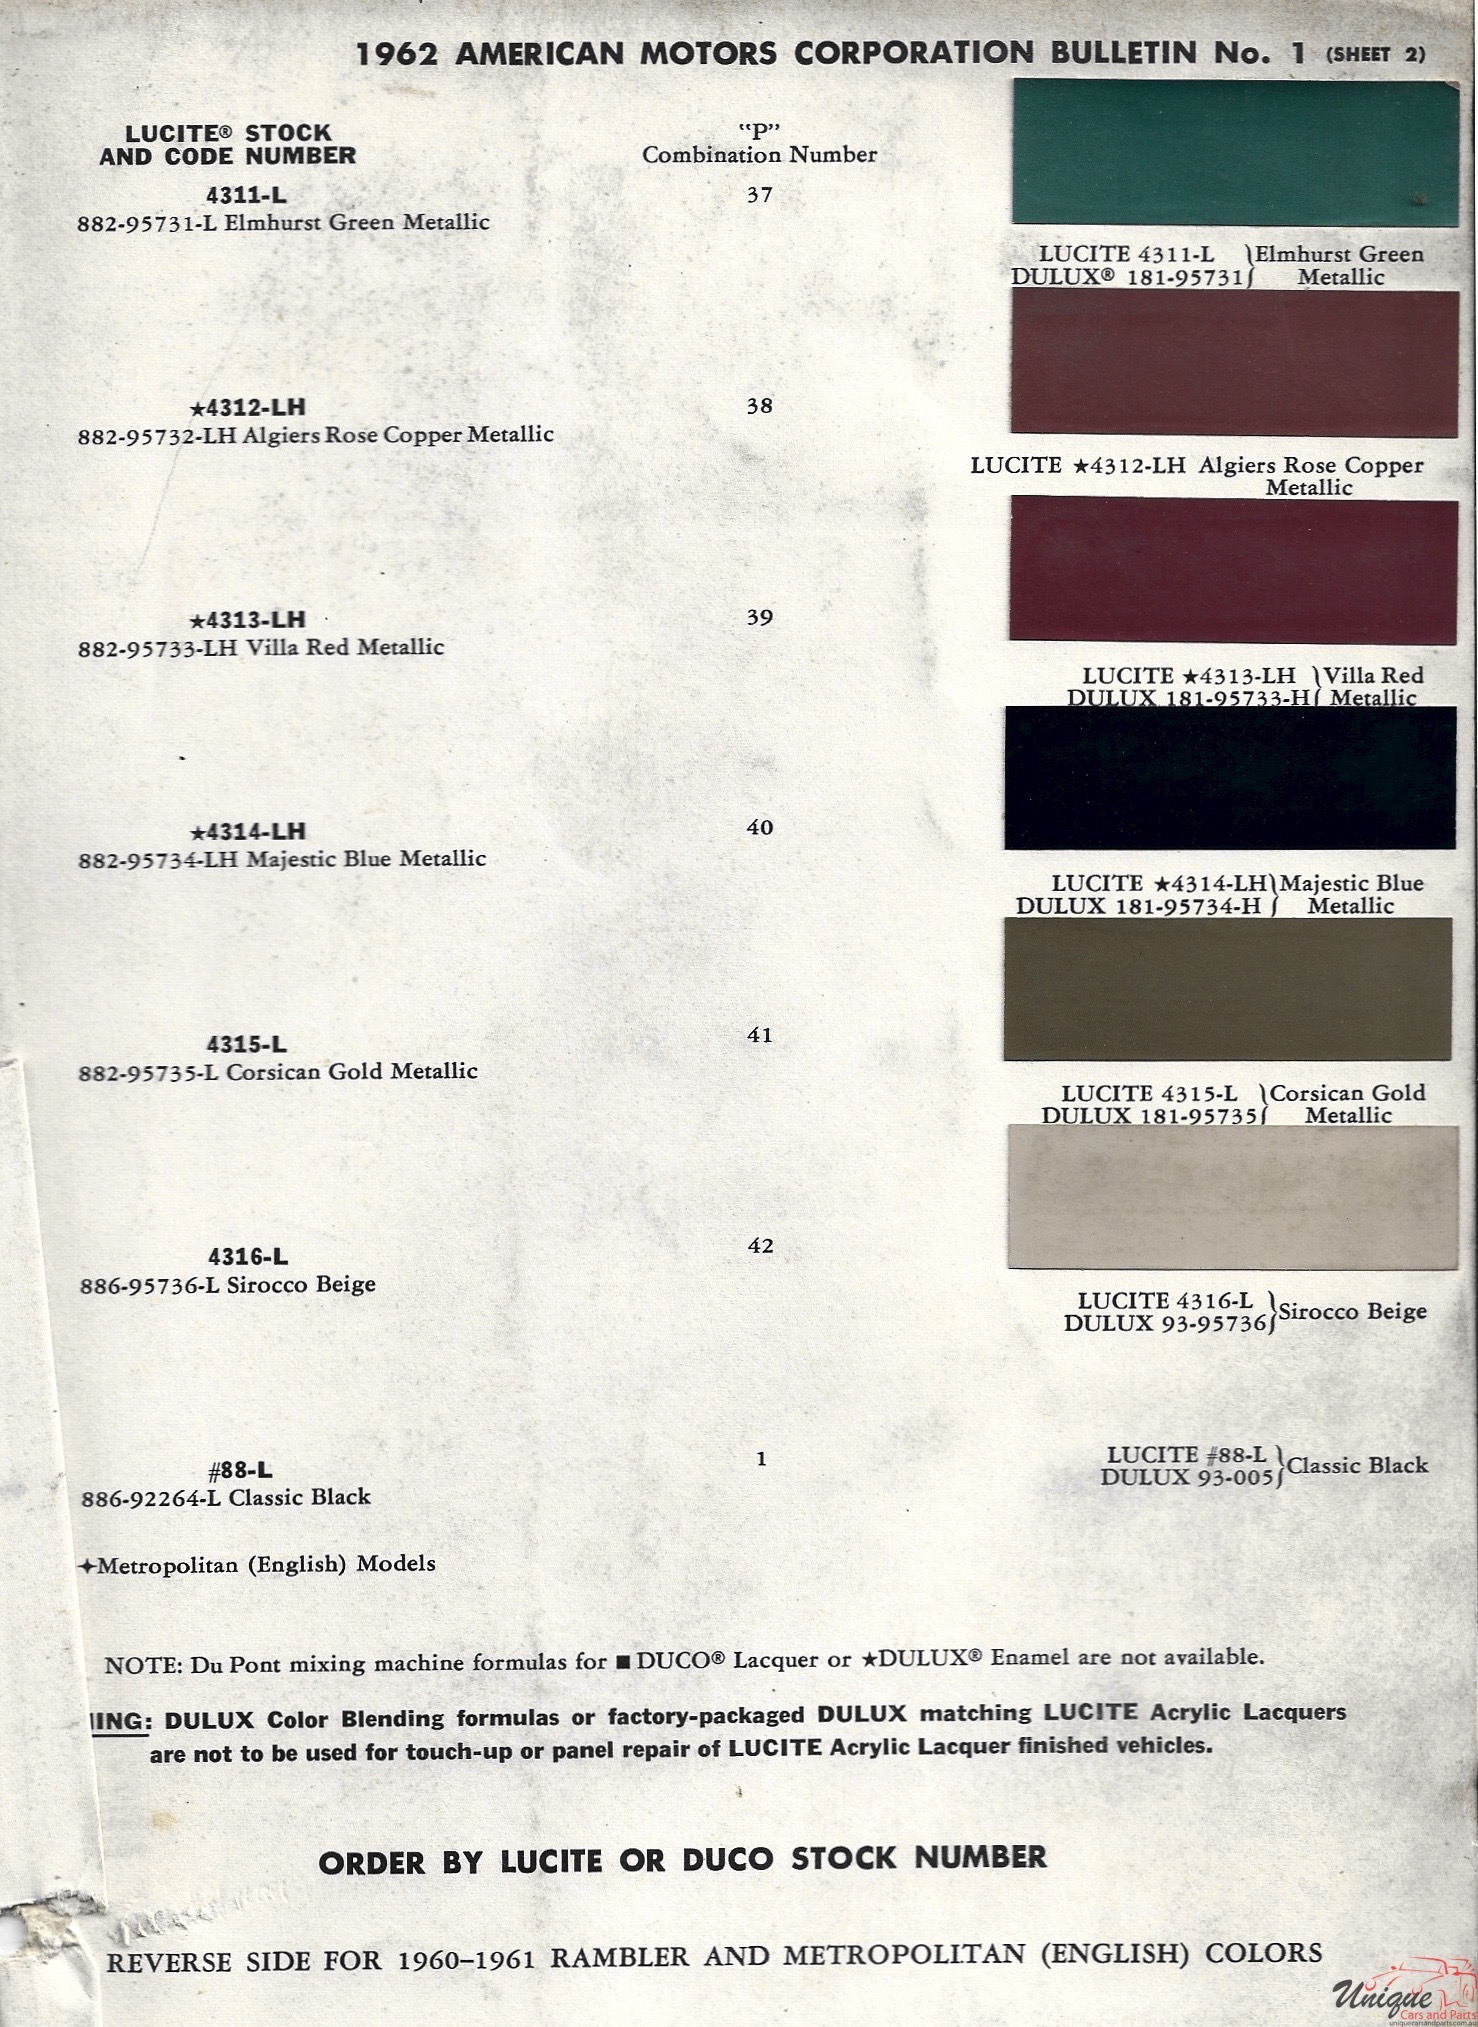 1962 AMC-2 Paint Charts